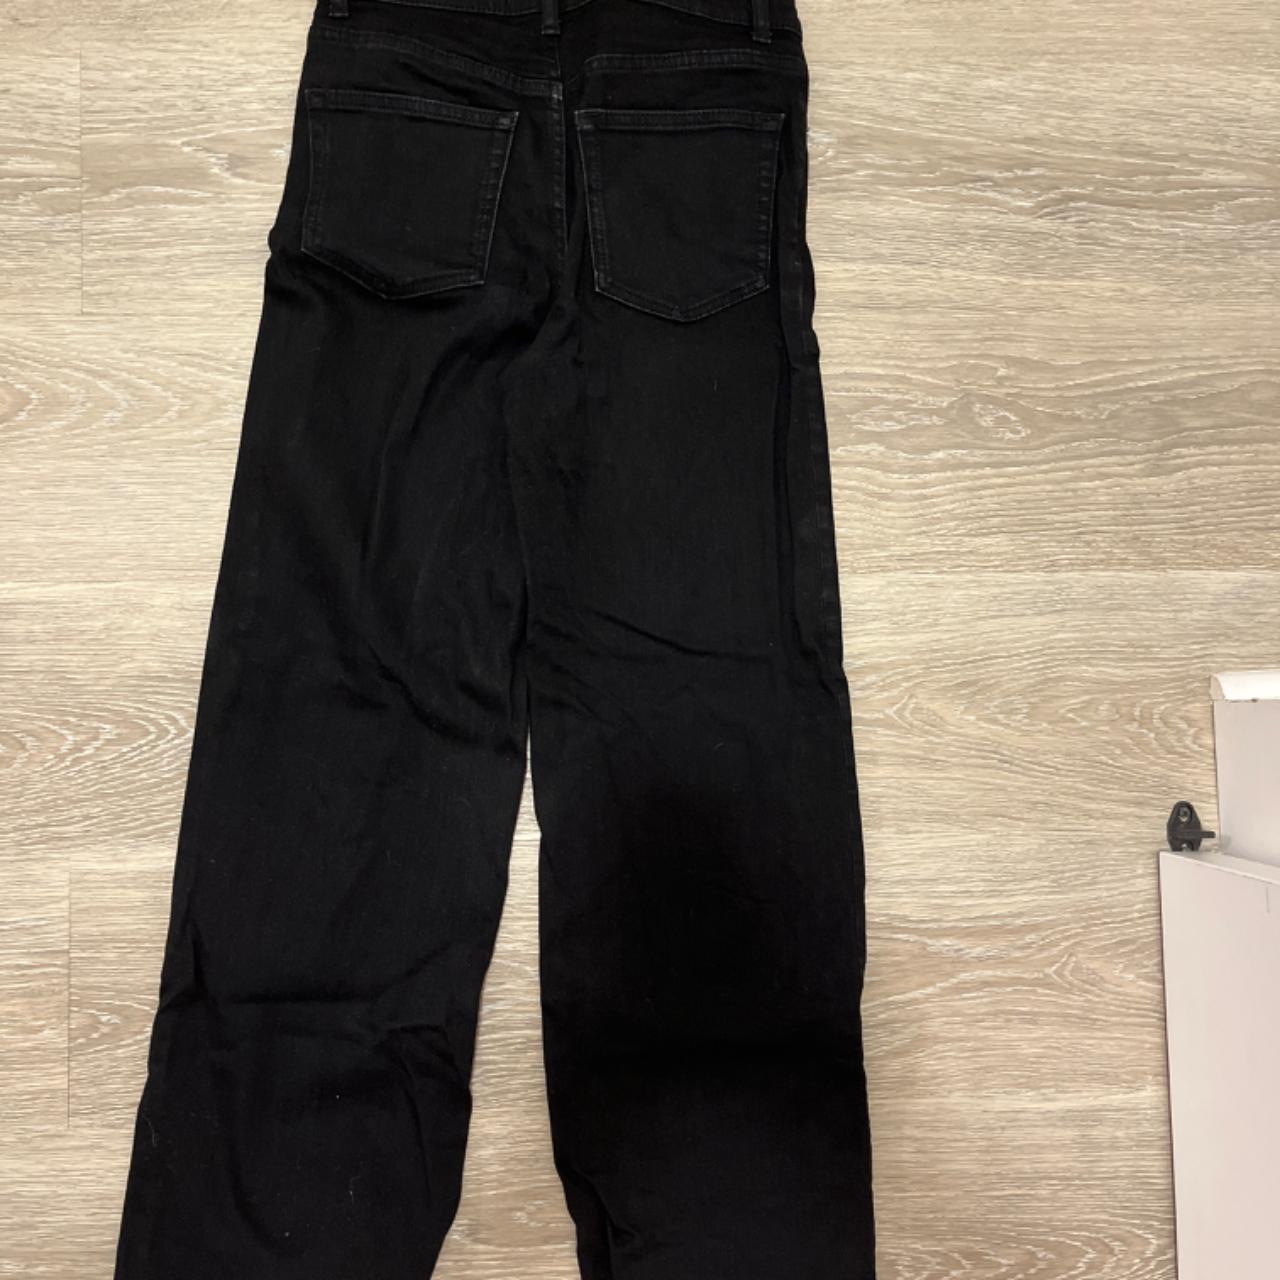 Reformation wide leg black jeans size 25 - Depop